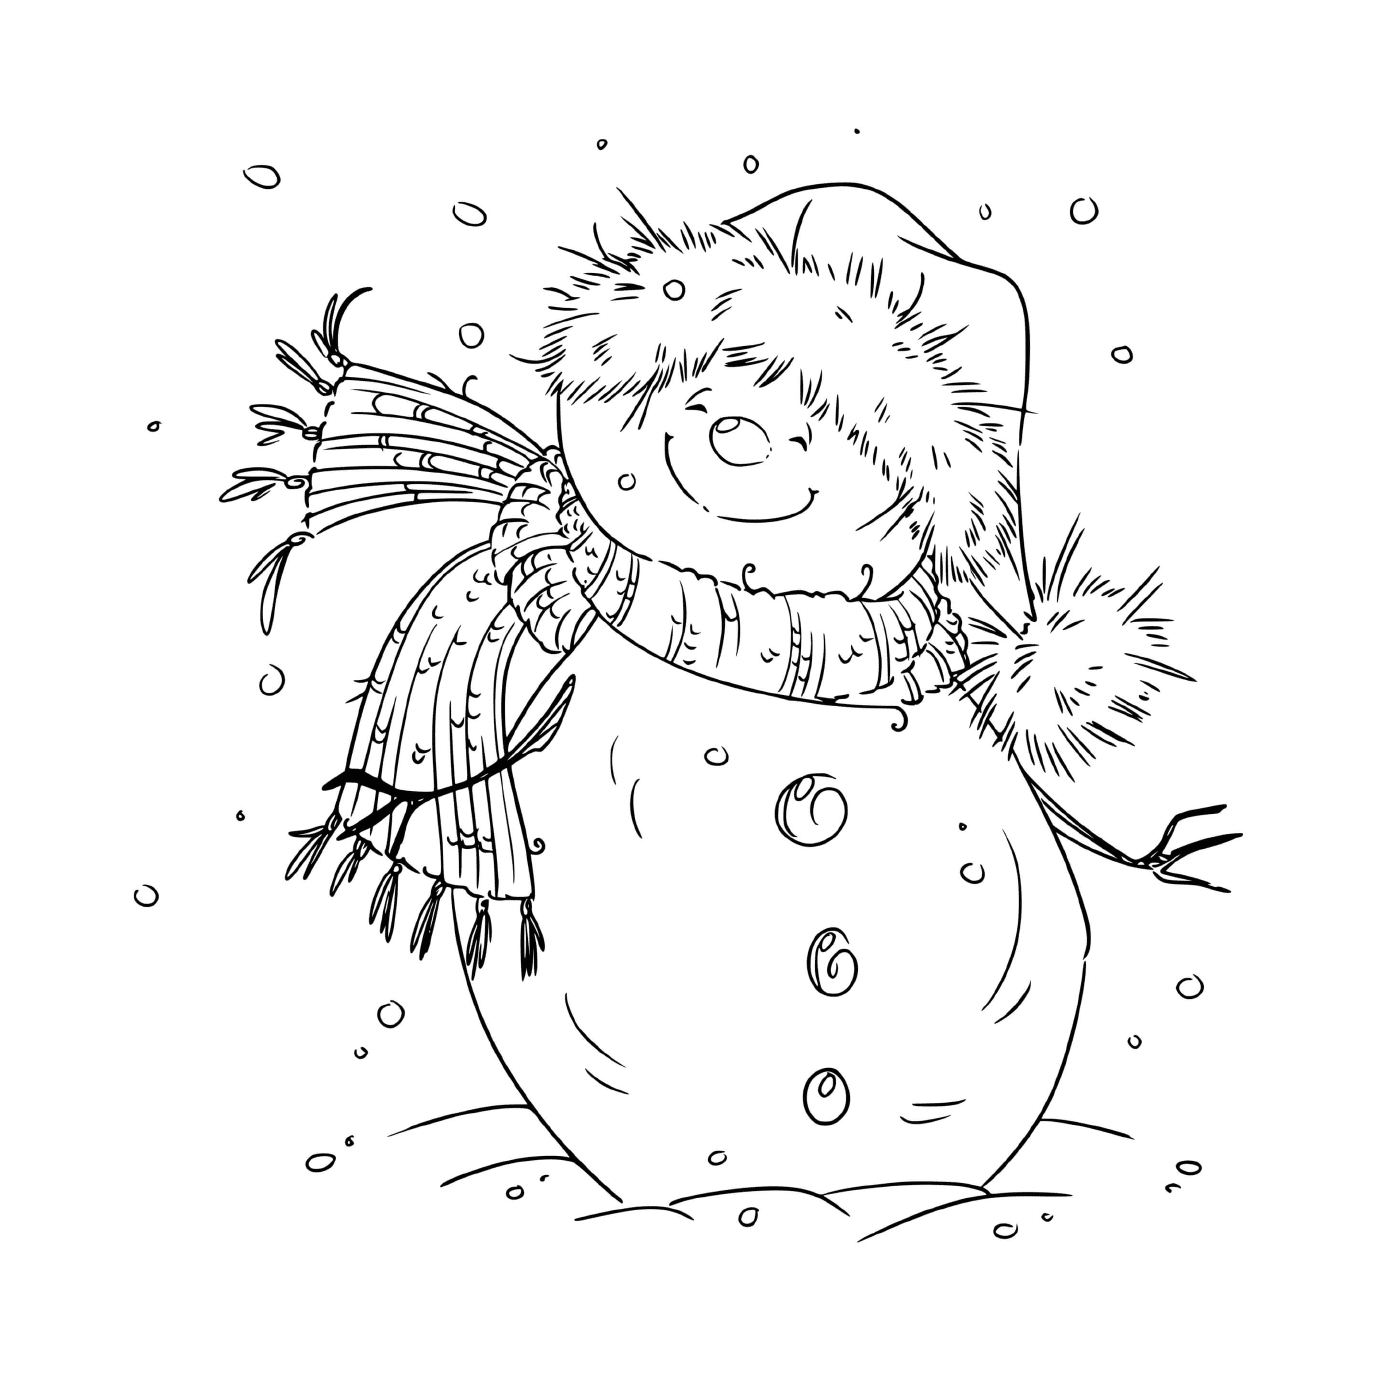  Un pupazzo di neve sorridente dal vento fresco la vigilia di Natale 